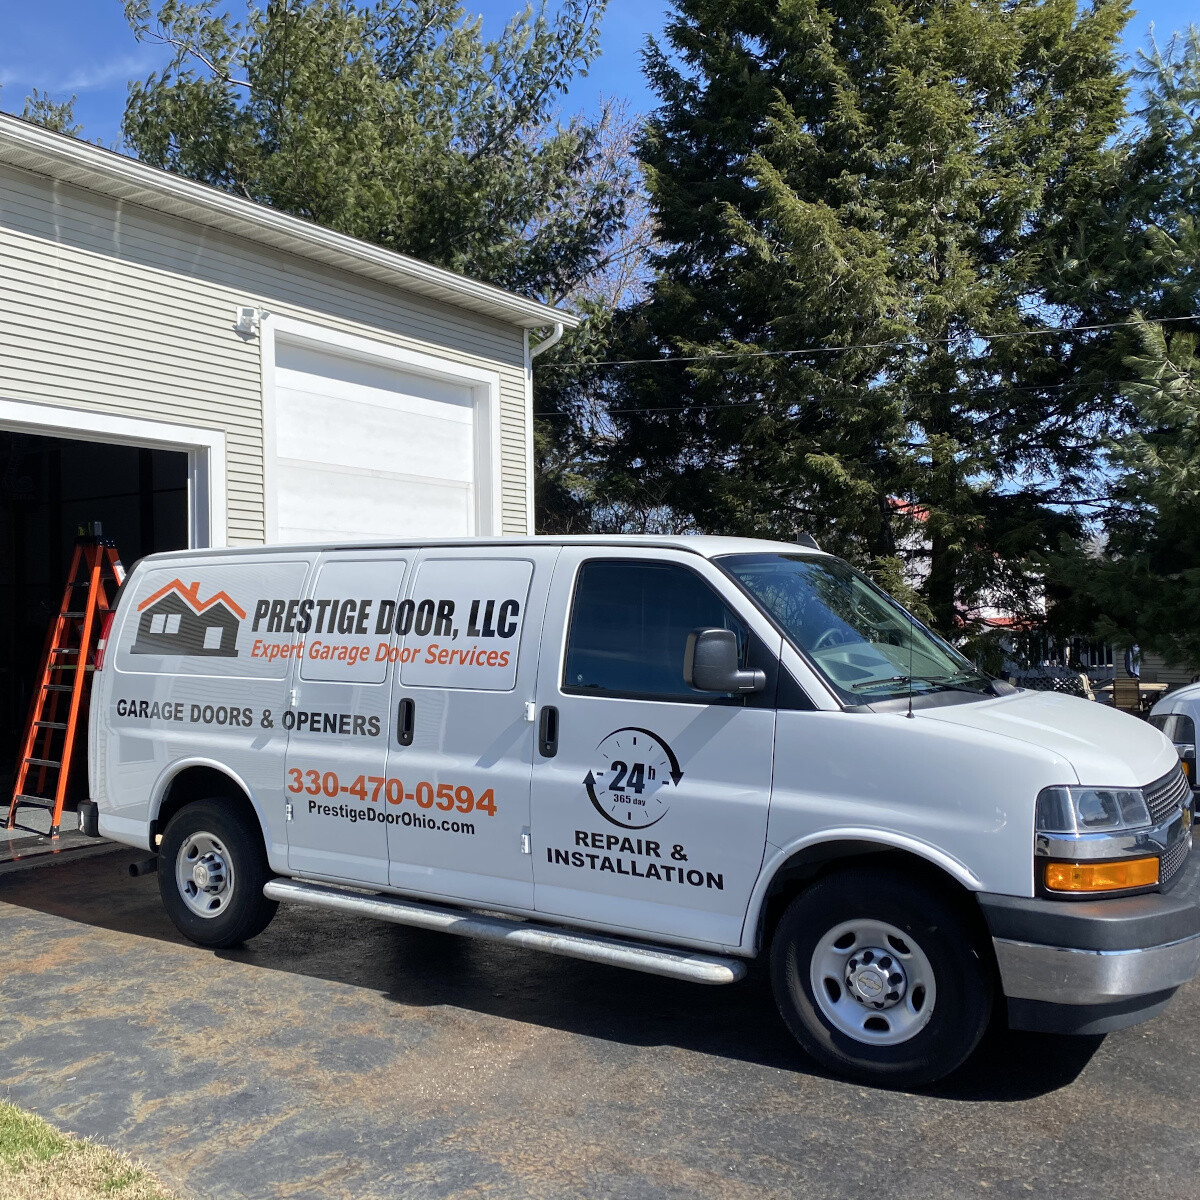 Garage Door Repair in Akron, Canton & Surrounding Areas